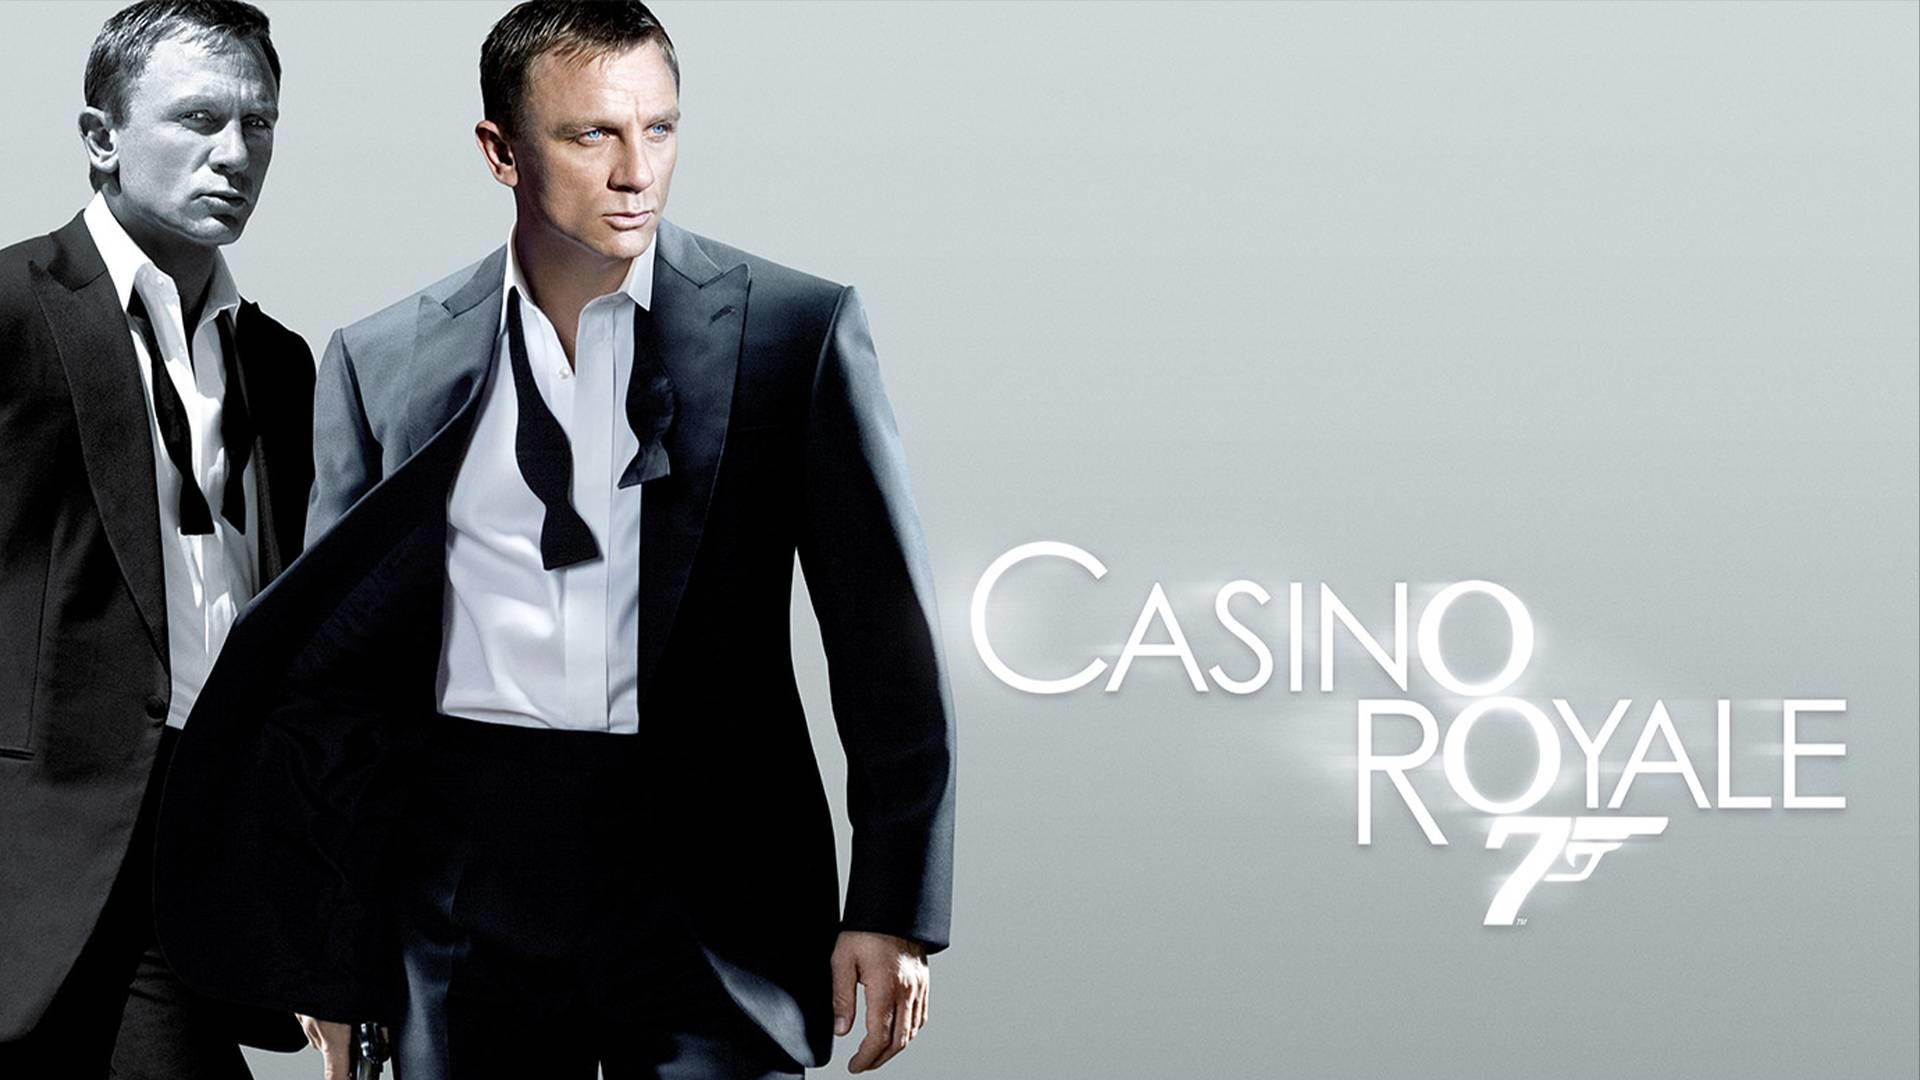 casino royale opening scene explained